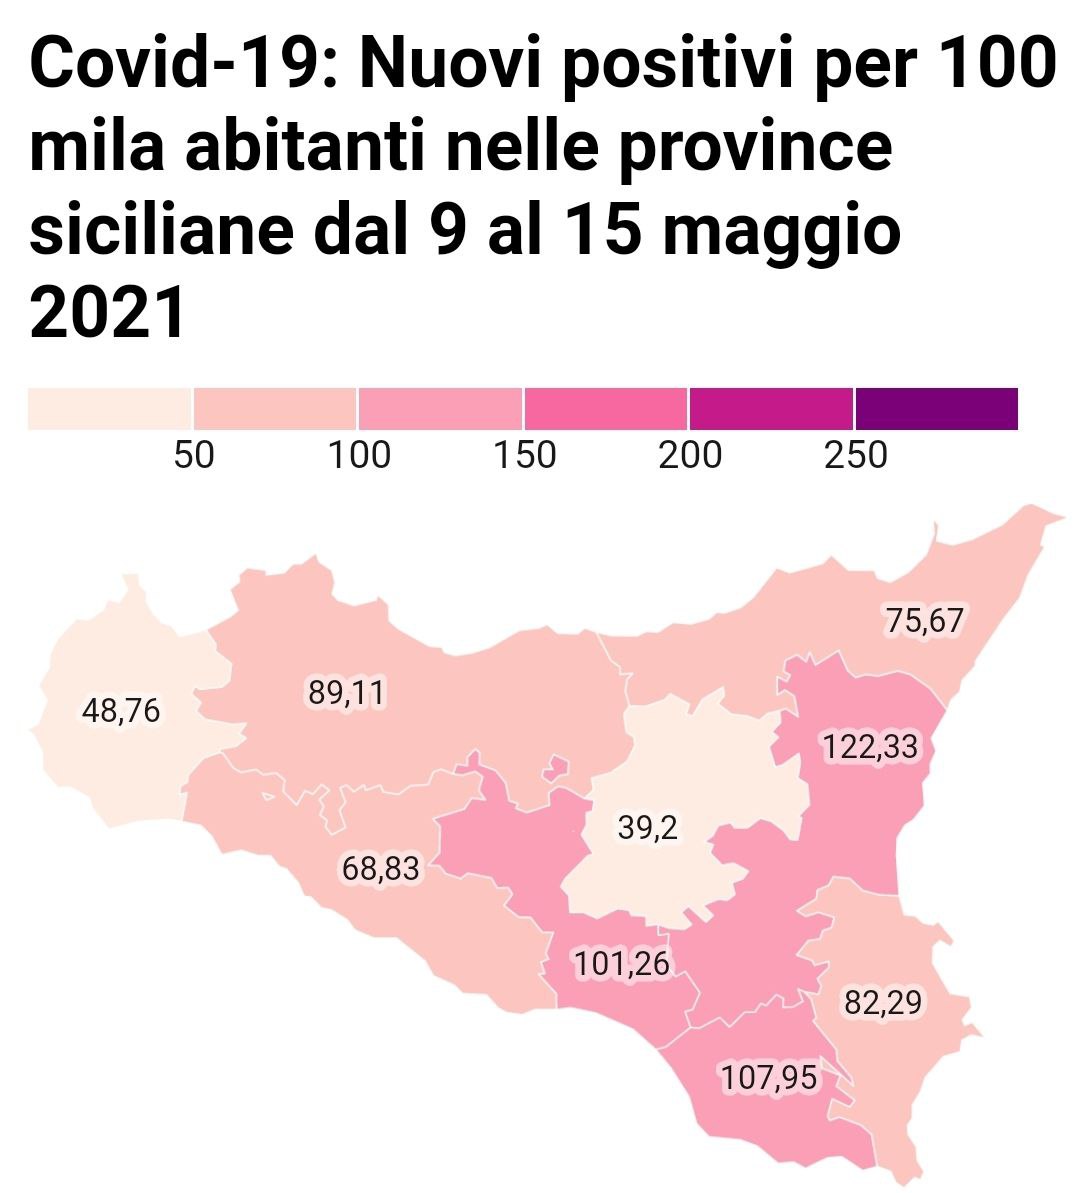 Nuovi positivi per 100 mila abitanti nelle province siciliane dal 9 al 15 maggio 2021